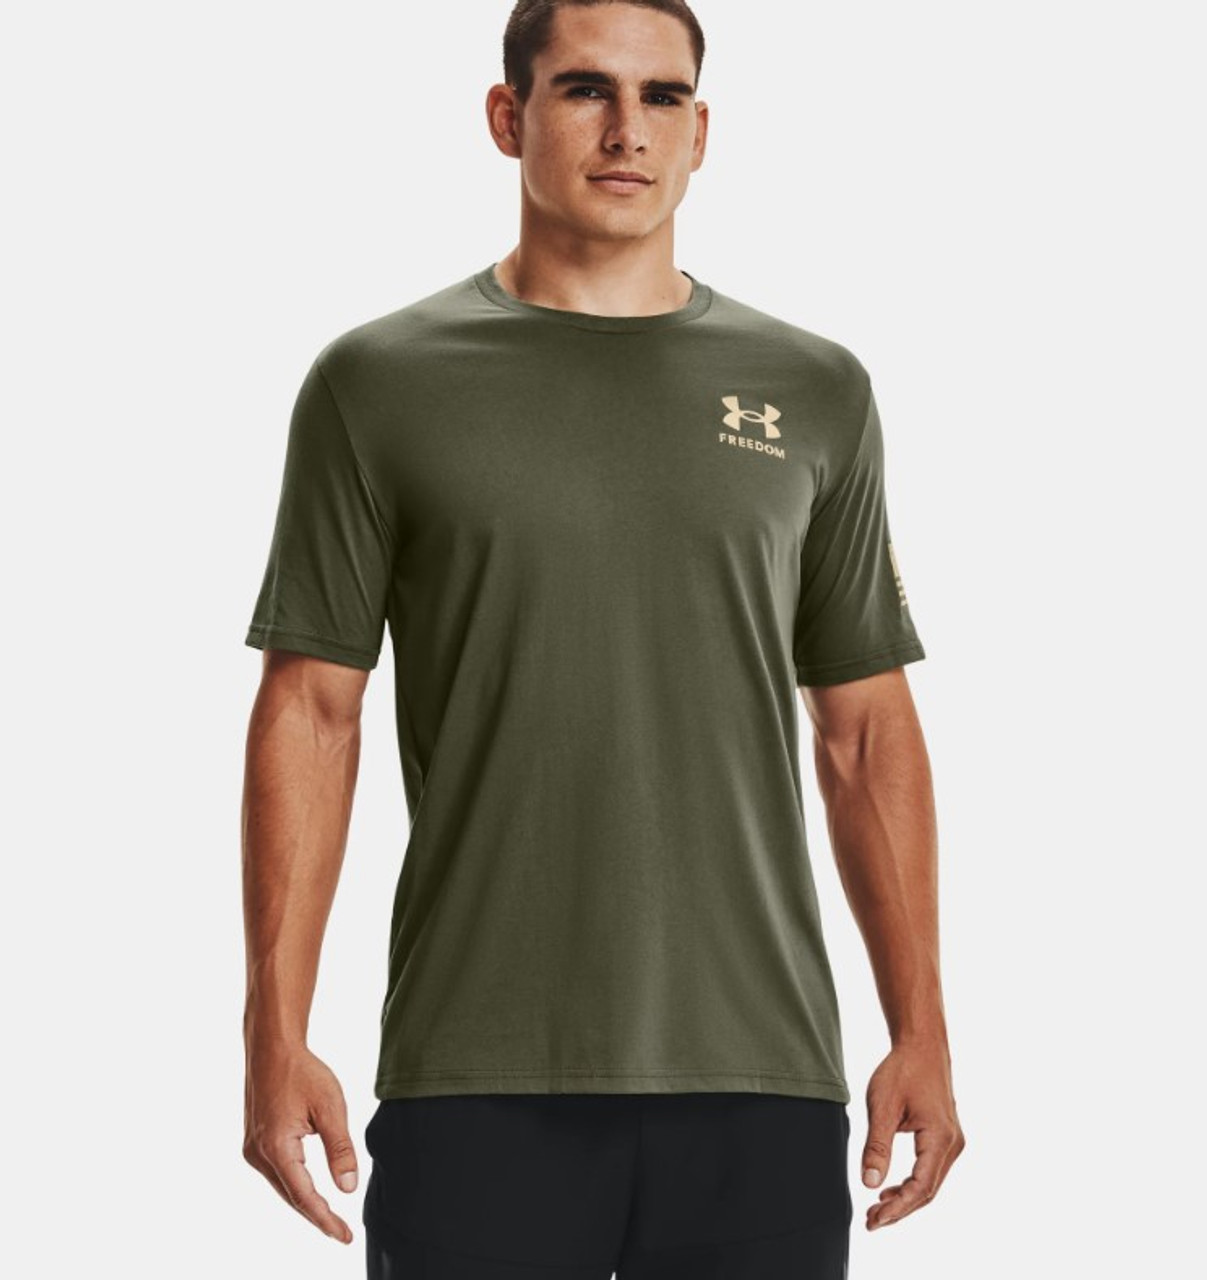 Irregularidades densidad fusión Men's Freedom Flag T-Shirt - Marine OD Green/Desert Sand - Ramsey Outdoor